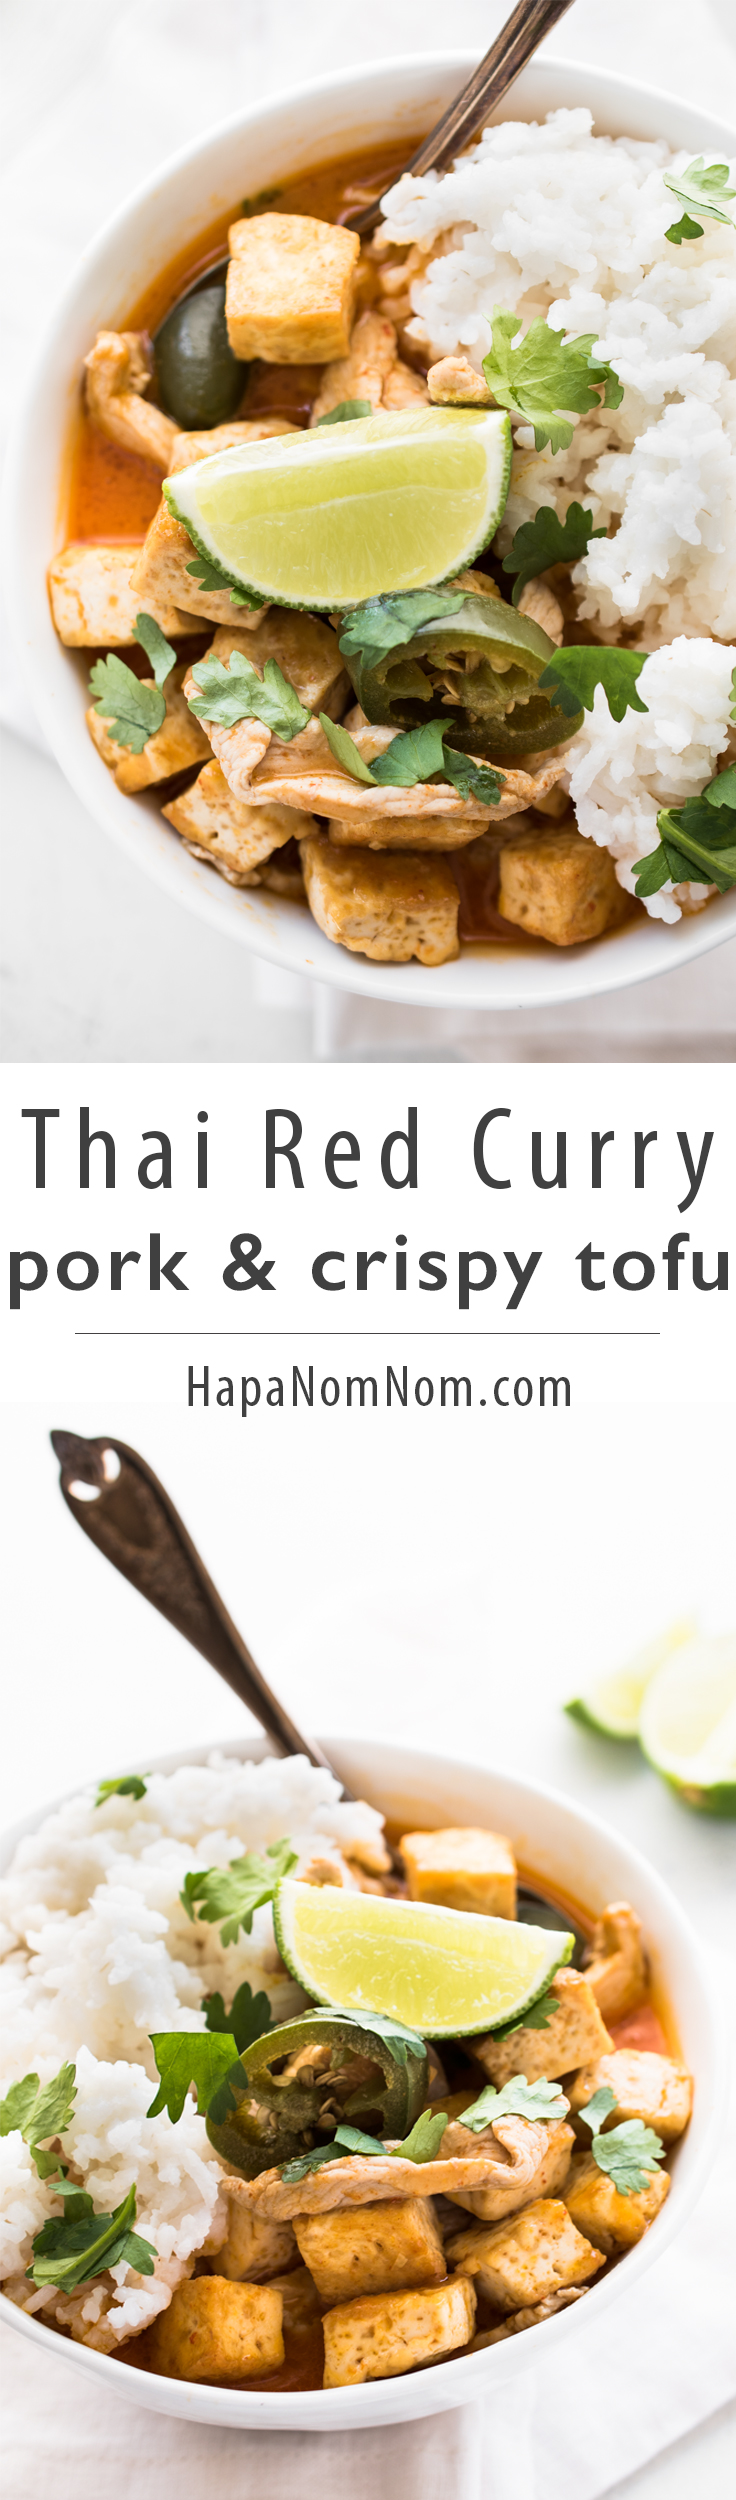 Thai-Red-Curry-Pork-and-Crispy-Tofu